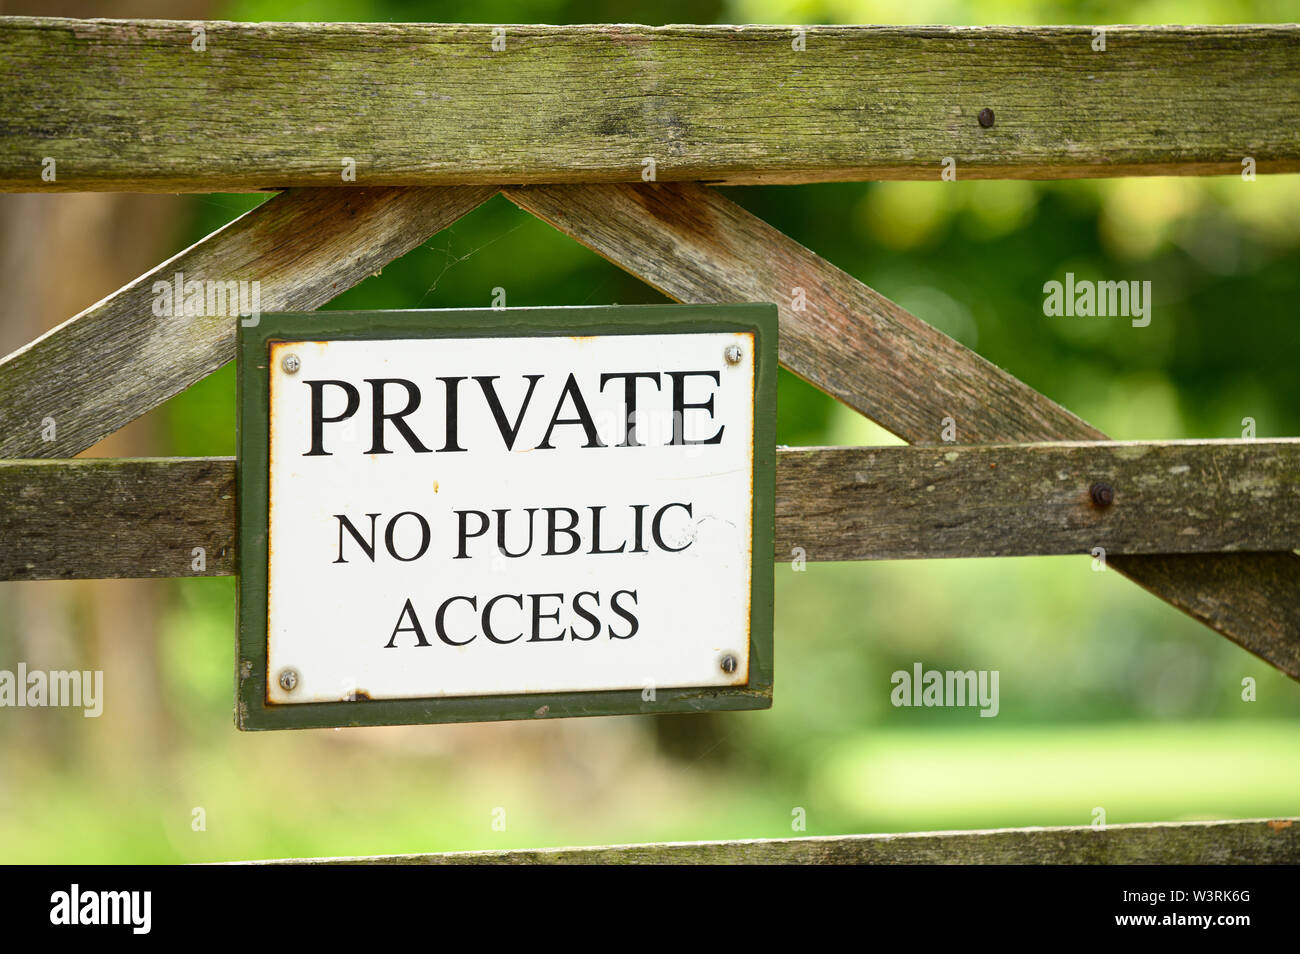 Private no public access sign Stock Photo